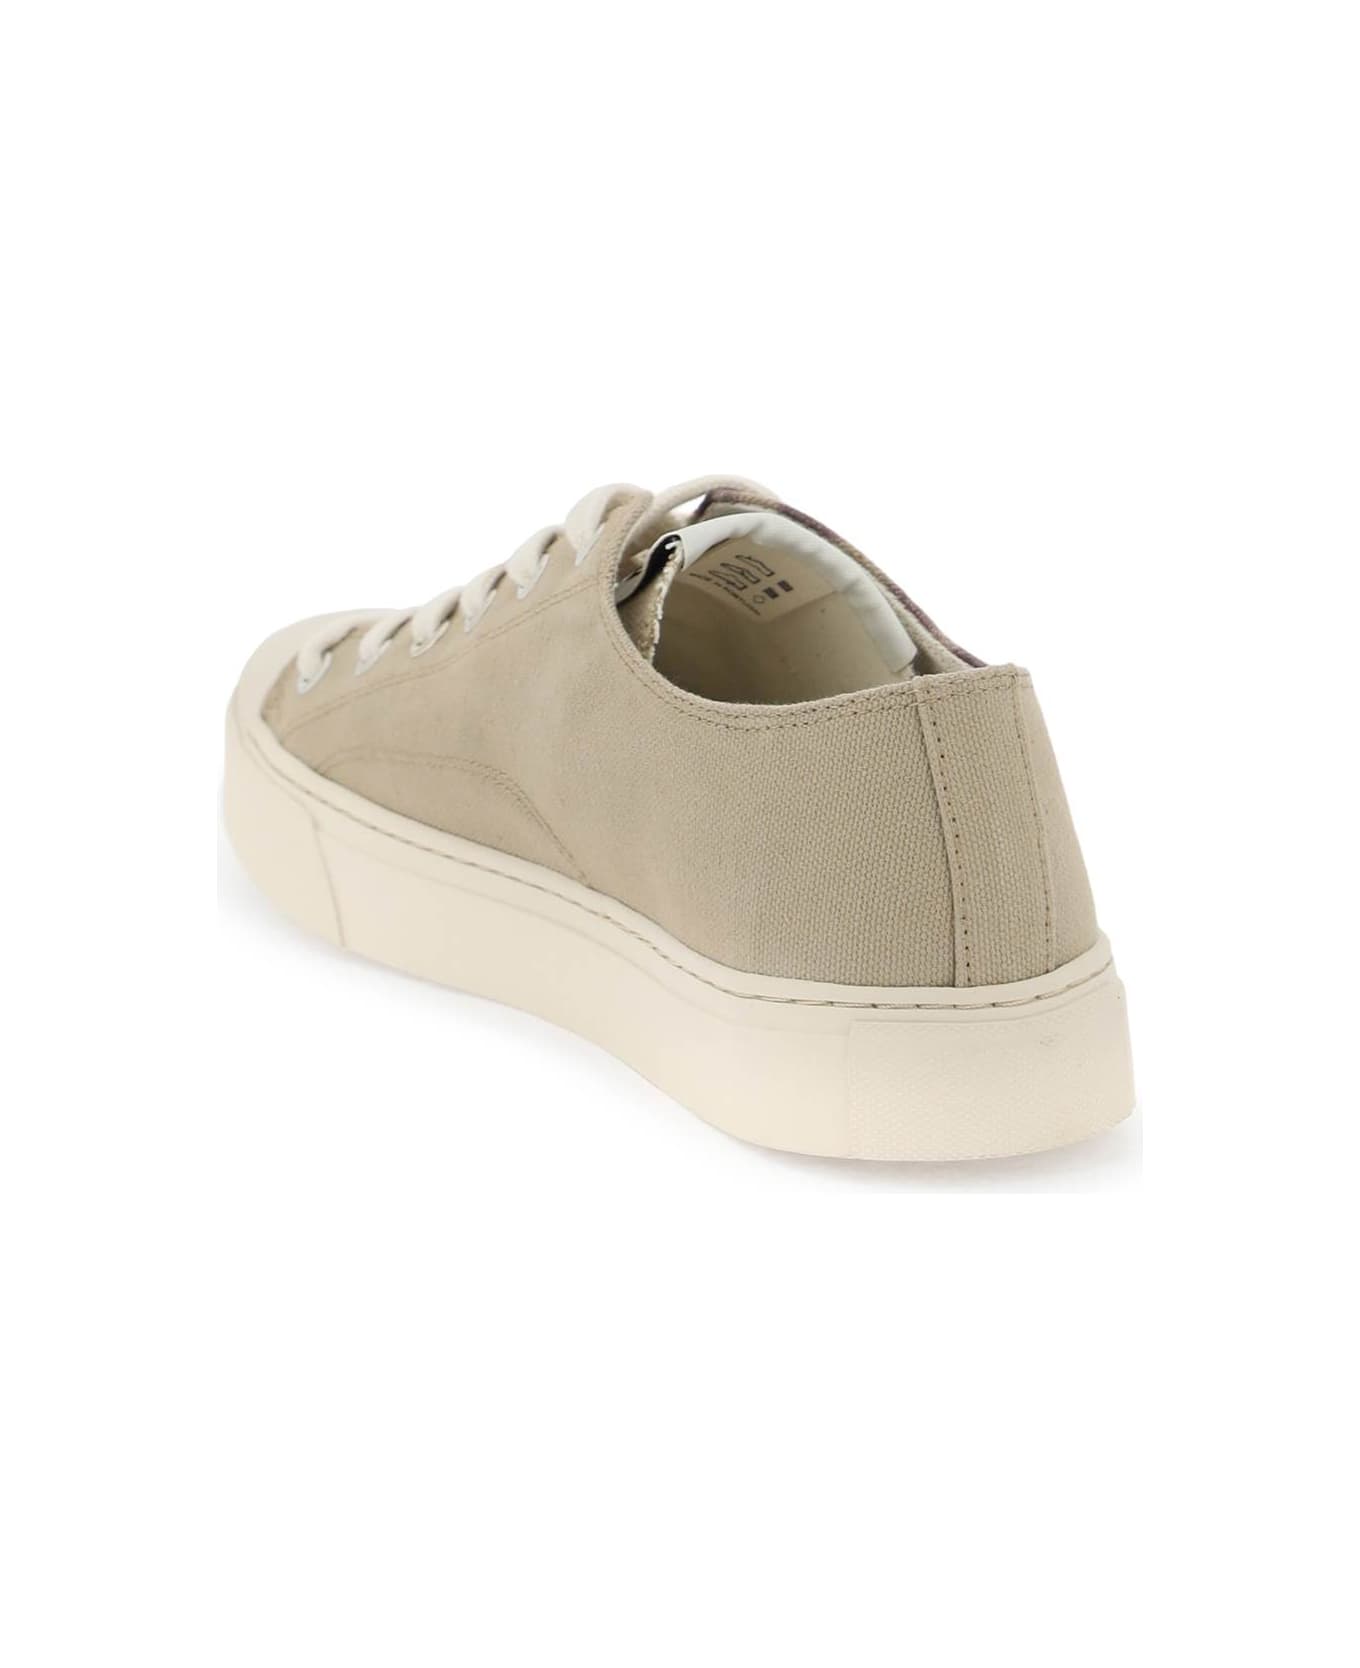 Vivienne Westwood Plimsoll Low Top 2.0 Sneakers - BEIGE PURPLE ORB